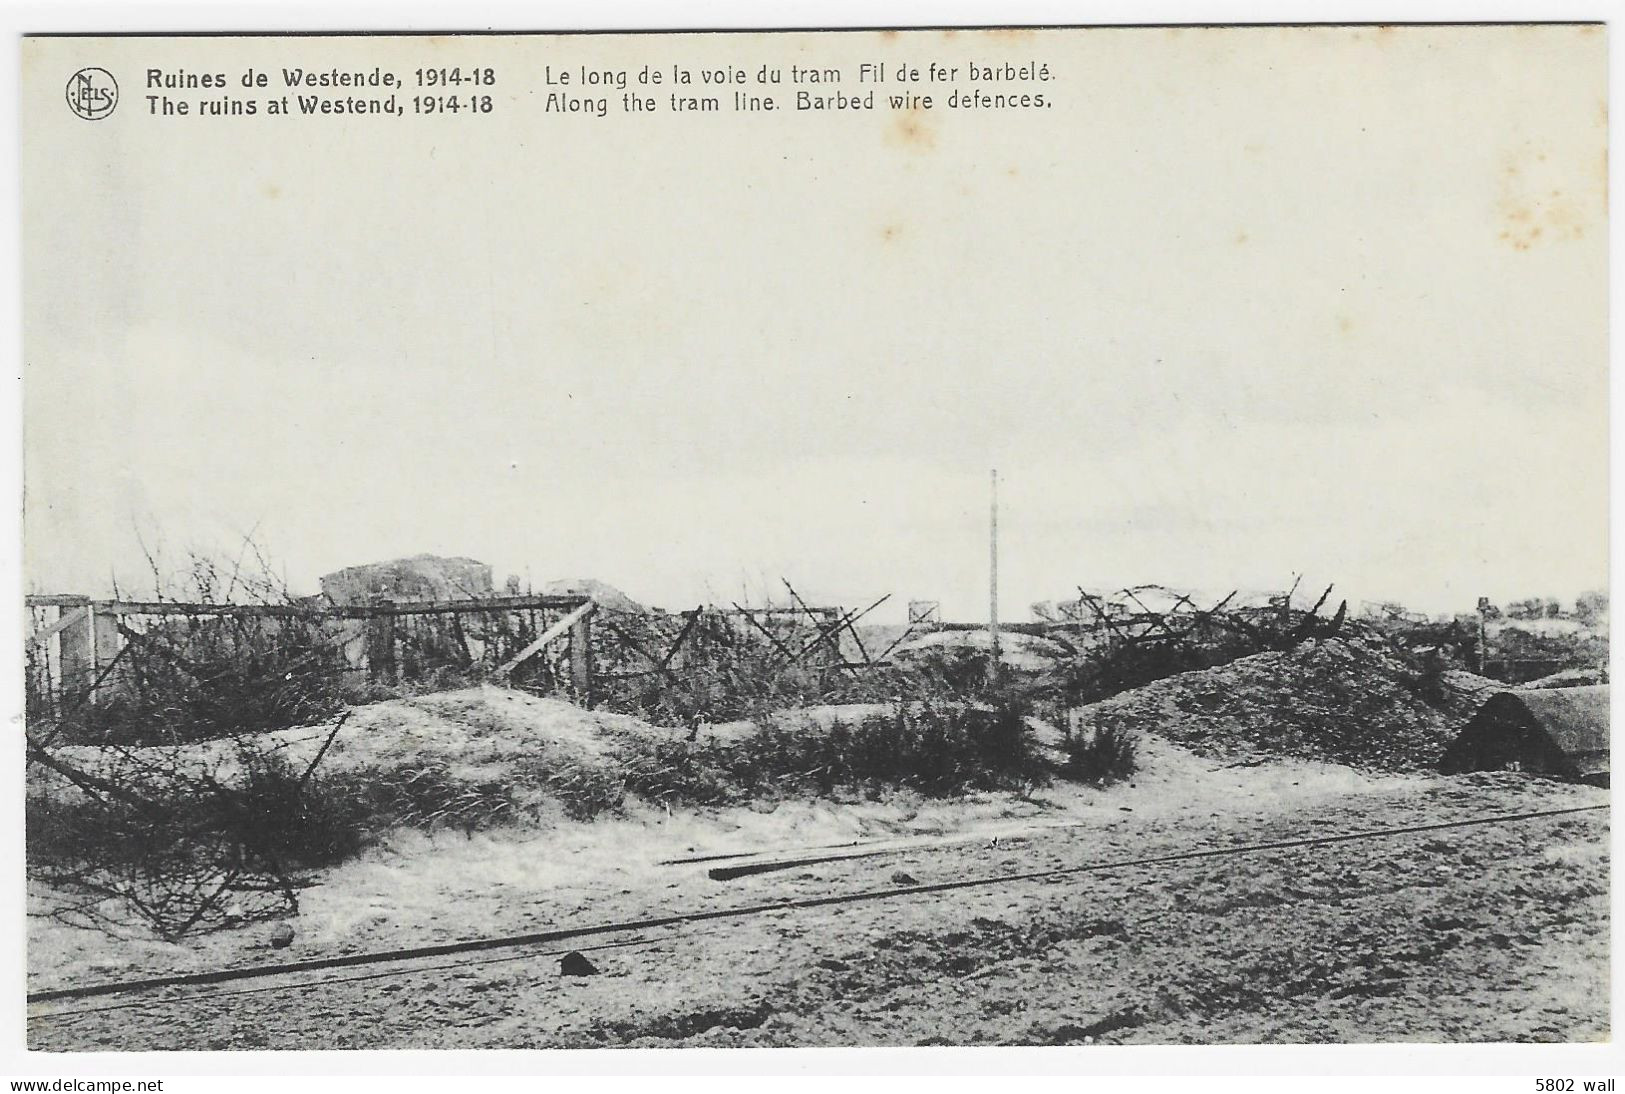 WESTENDE Ruines De 14-18 : Le Long De La Voie Du Tram - Fil De Fer Barbelé - Guerre 1914-18